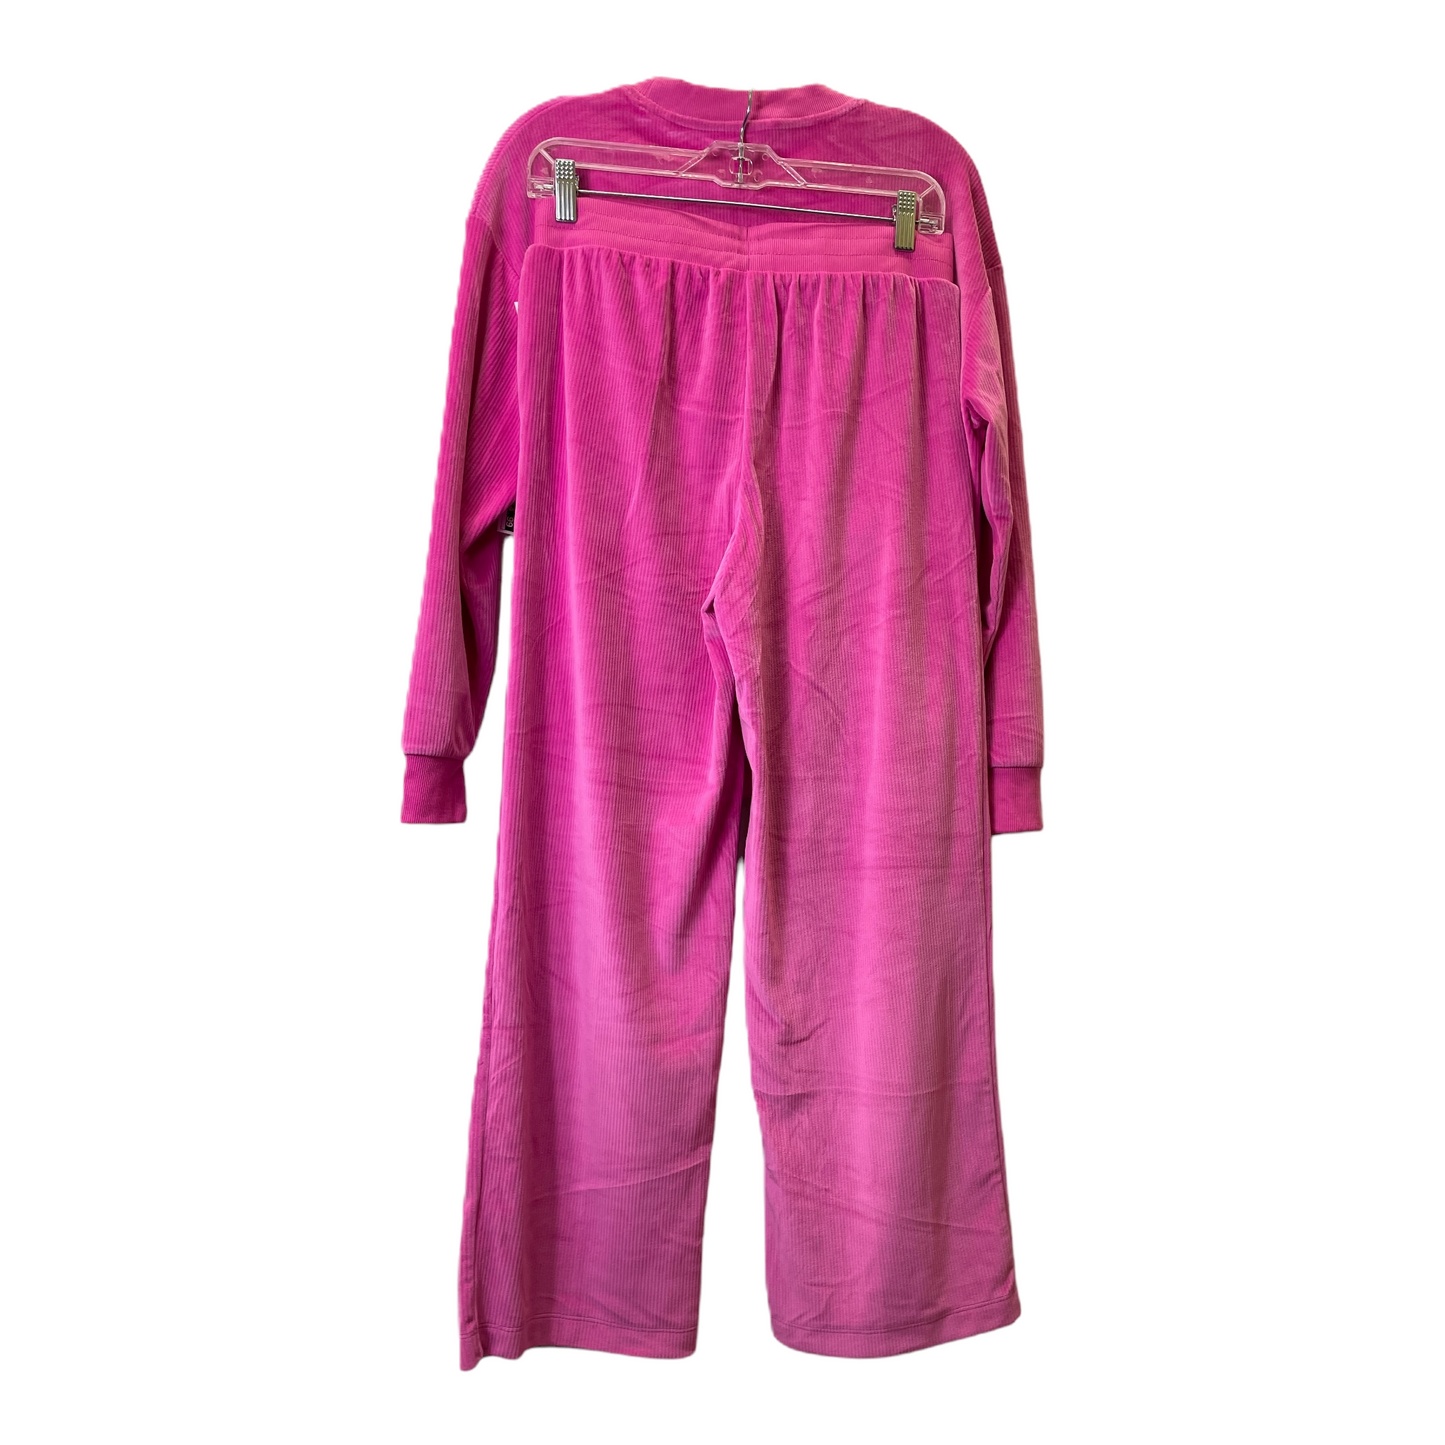 Pink Athletic Pants 2pc By Joyspun, Size: 6